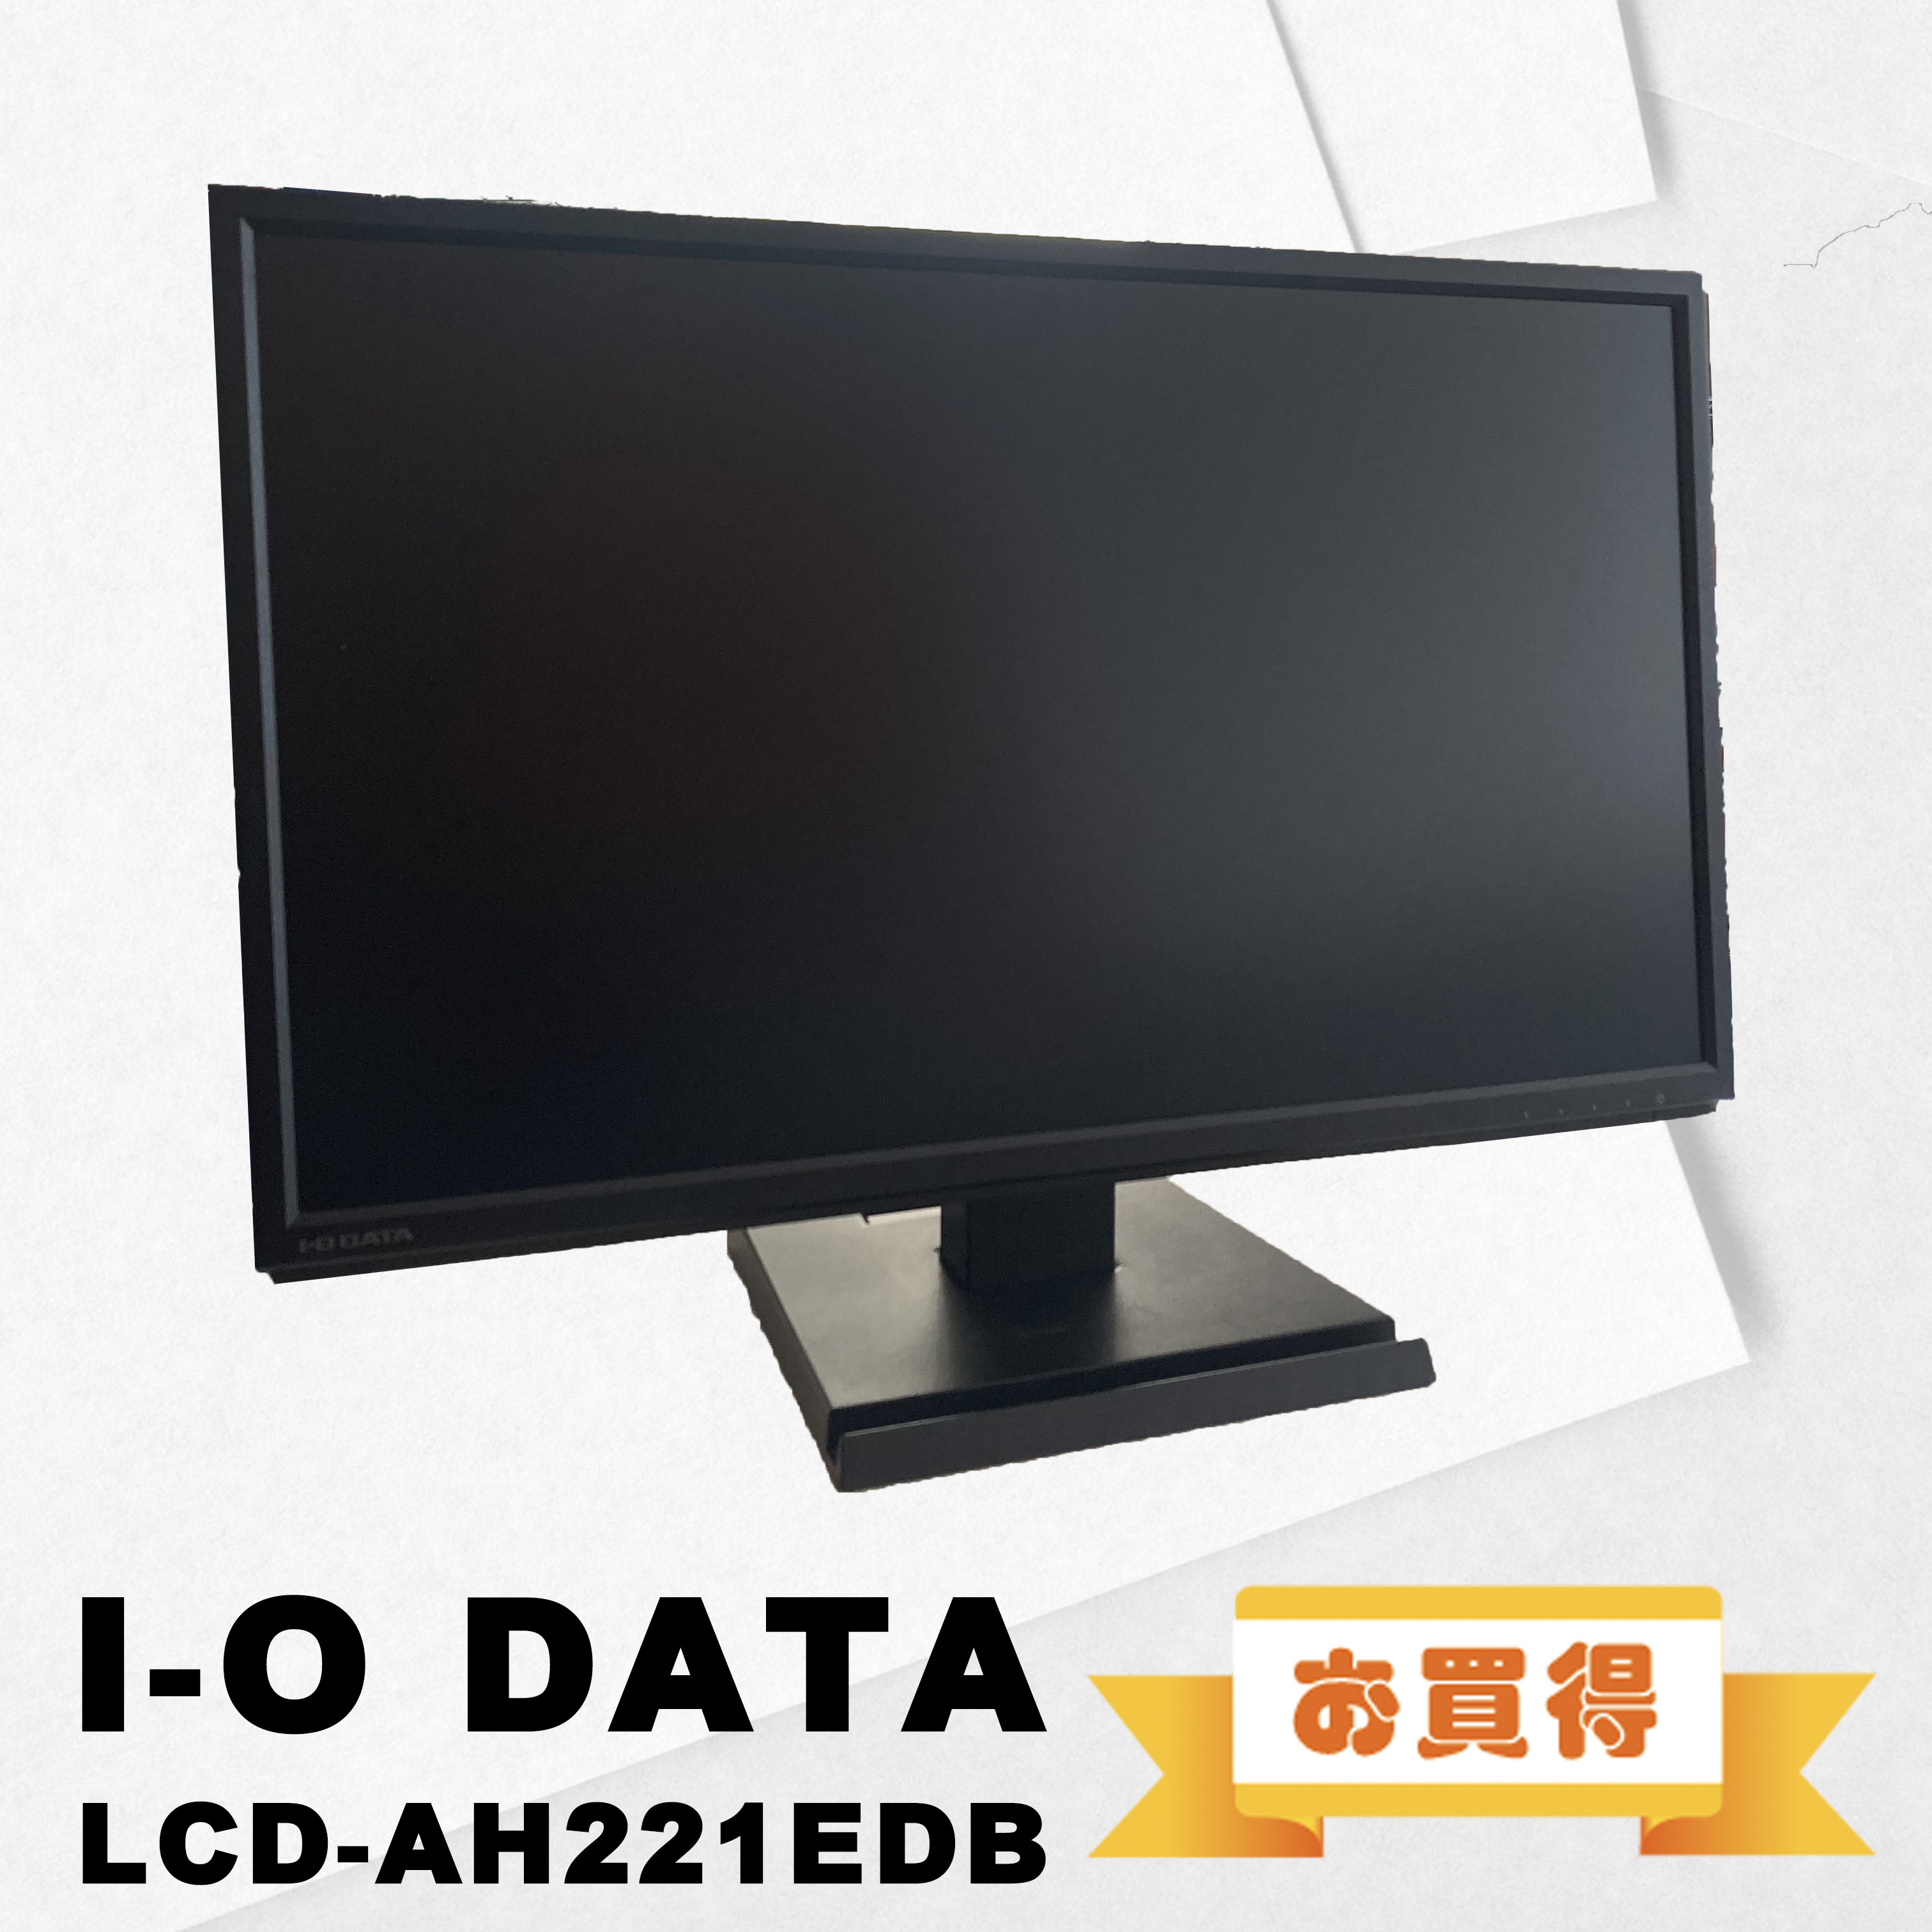 IO-DATE  21.5インチモニター ブラック HDMI アナログRGB 解像度 1920×1080  LCD-AH221EDB  中古モニター